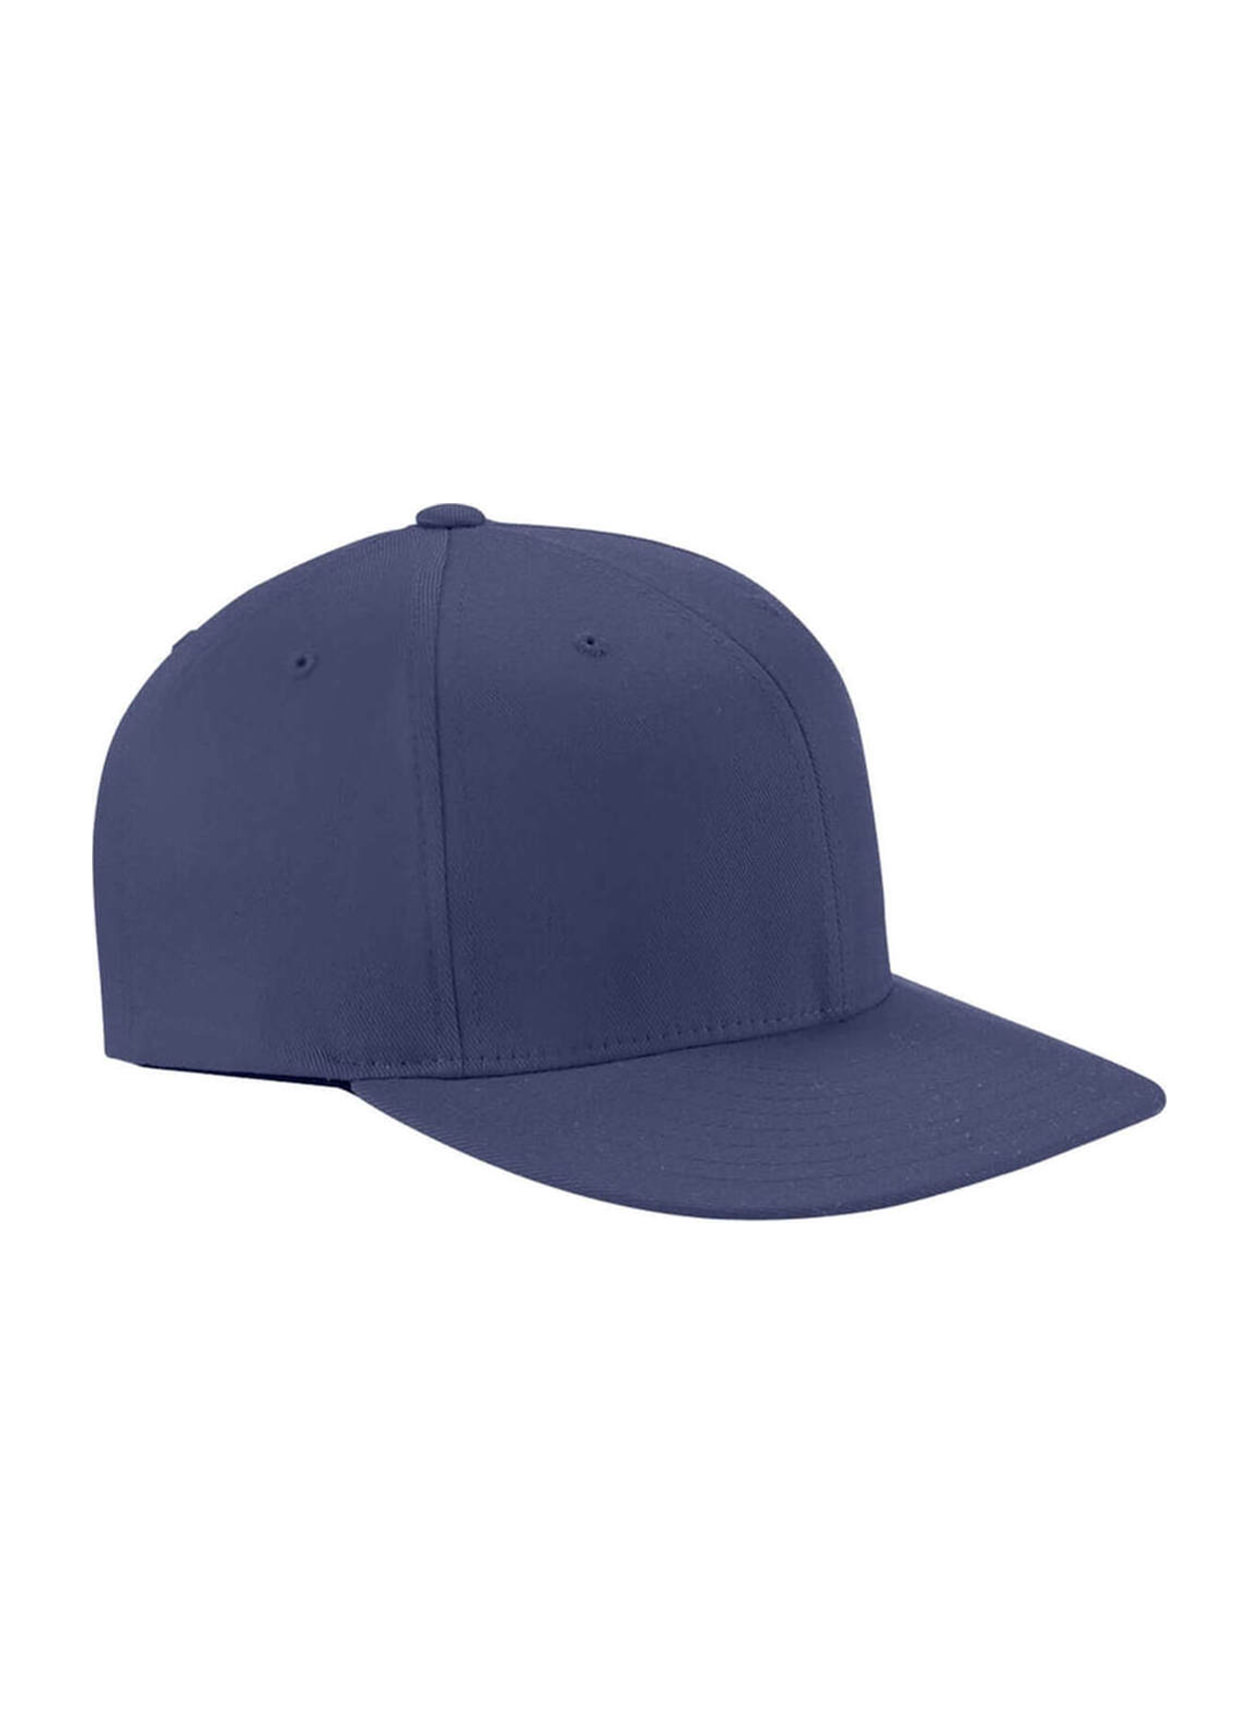 Flexfit Navy Wooly Twill Pro Baseball On-Field Shape Hat with Flat Bill